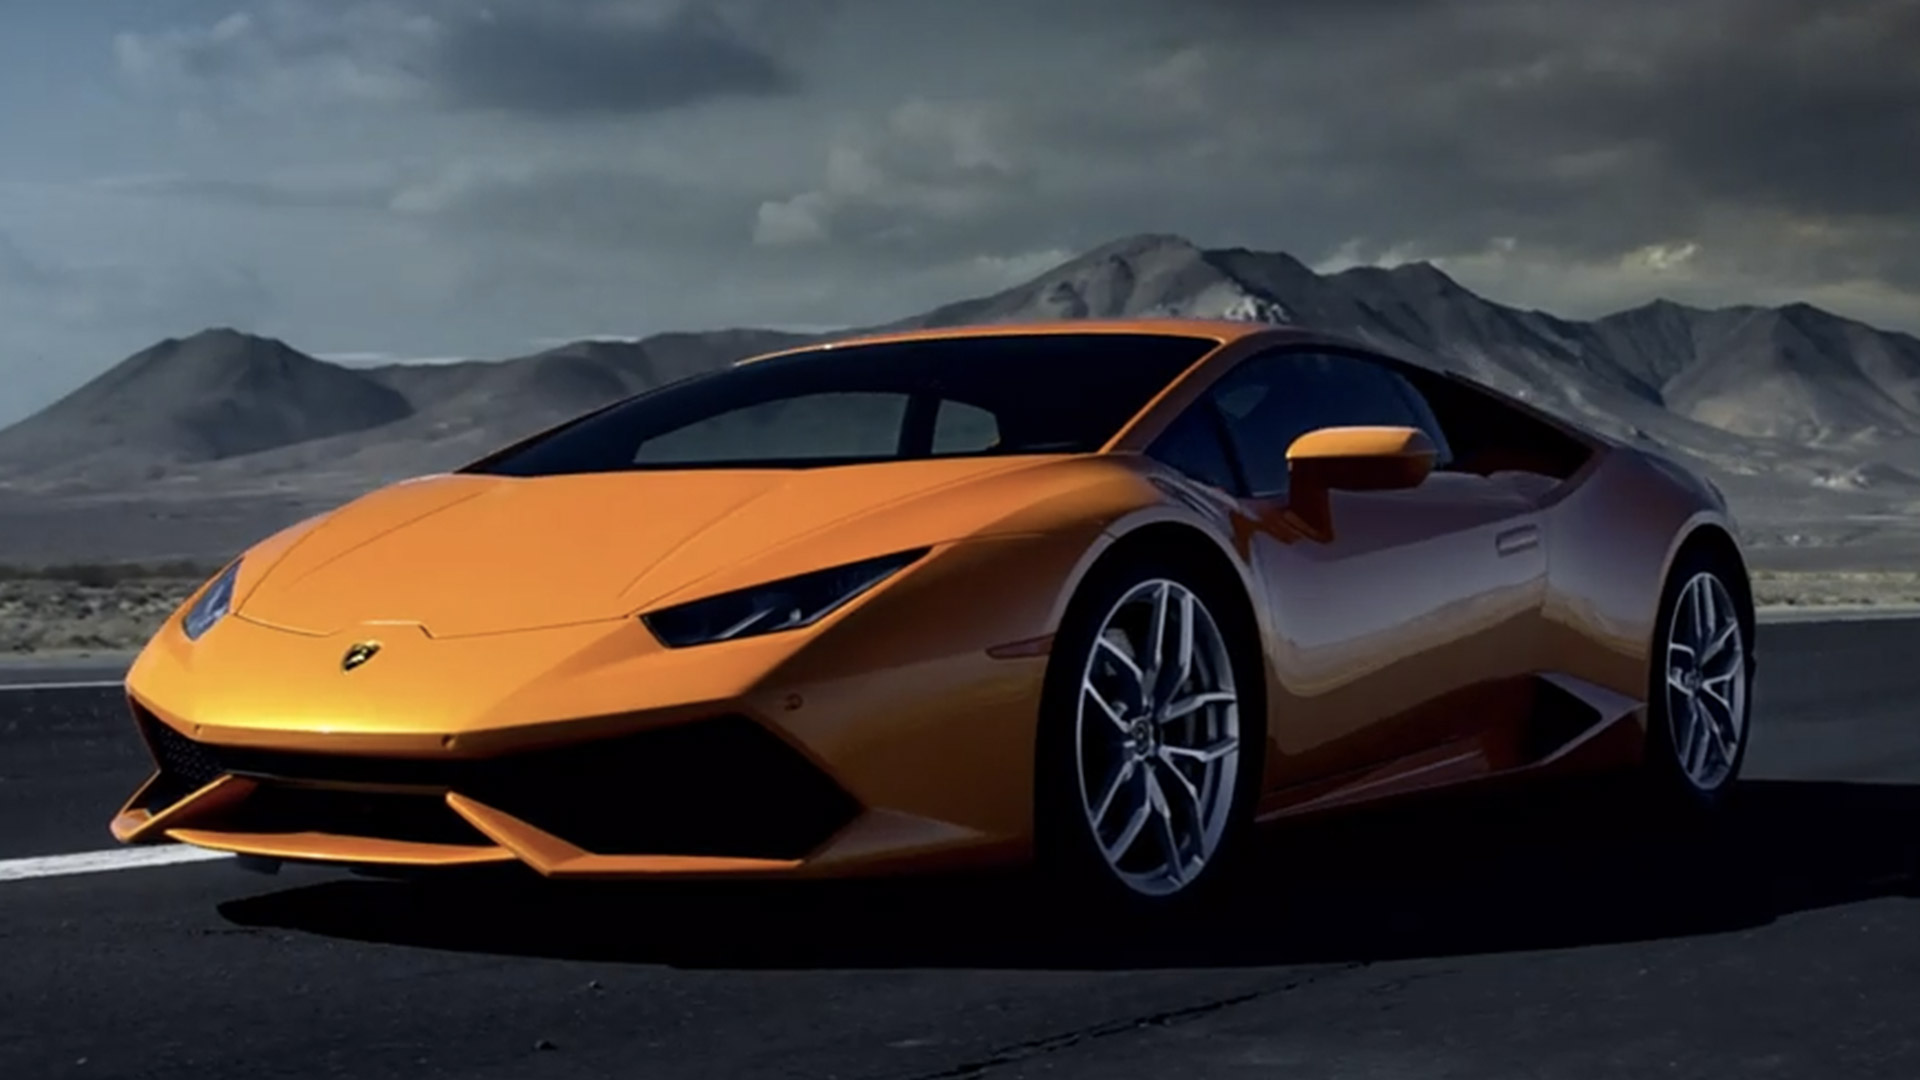 Lamborghini ghi nhận doanh số kỷ lục trong năm 2017